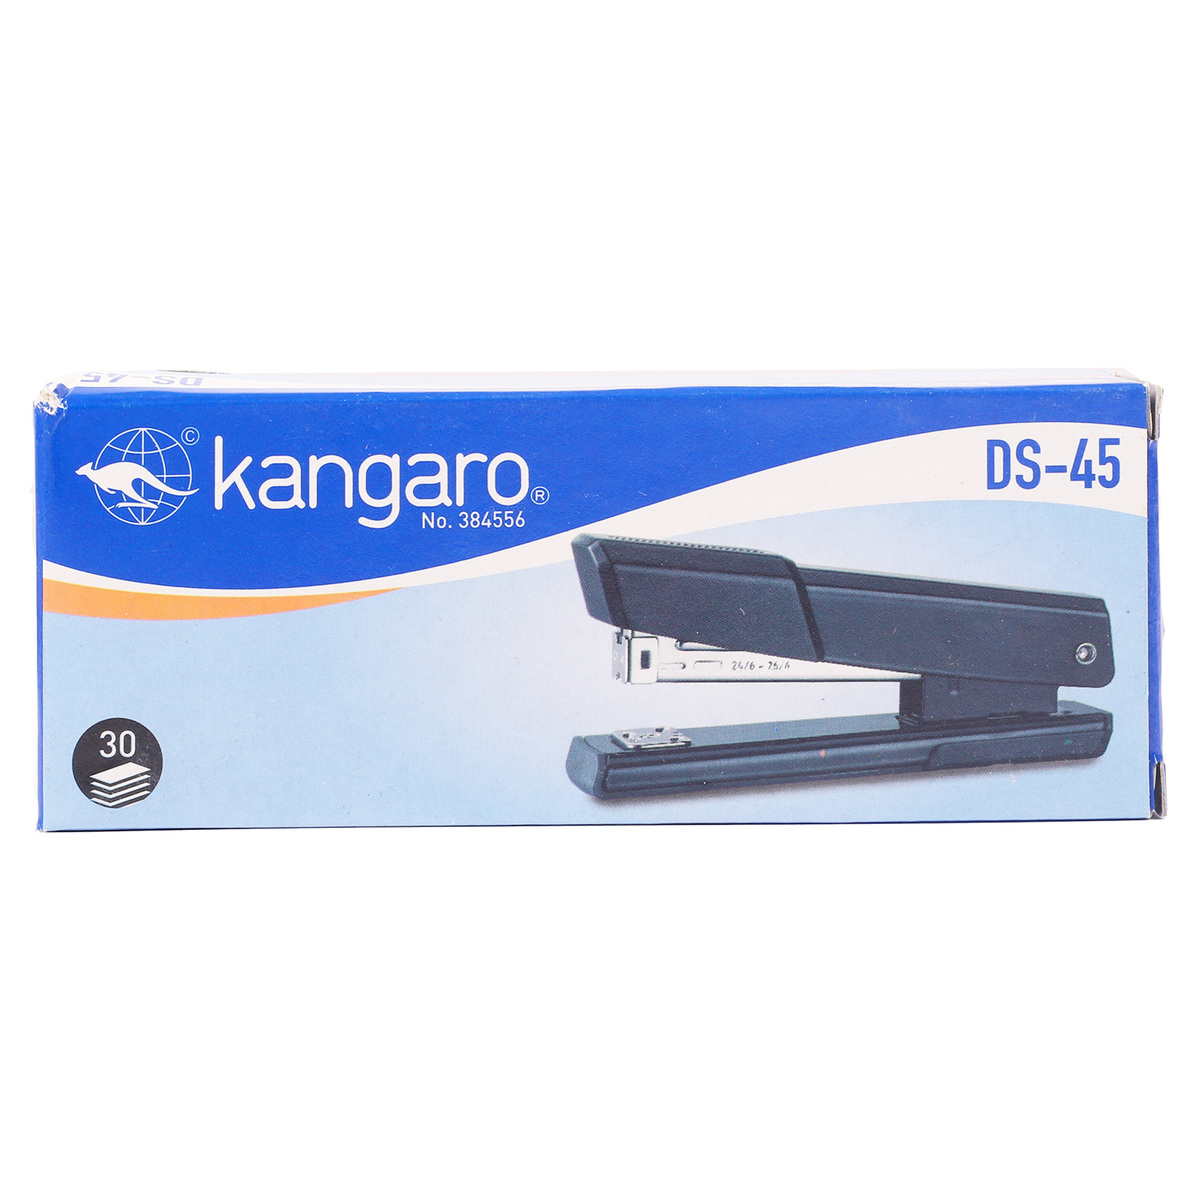 Kangaro Stapler DS-45